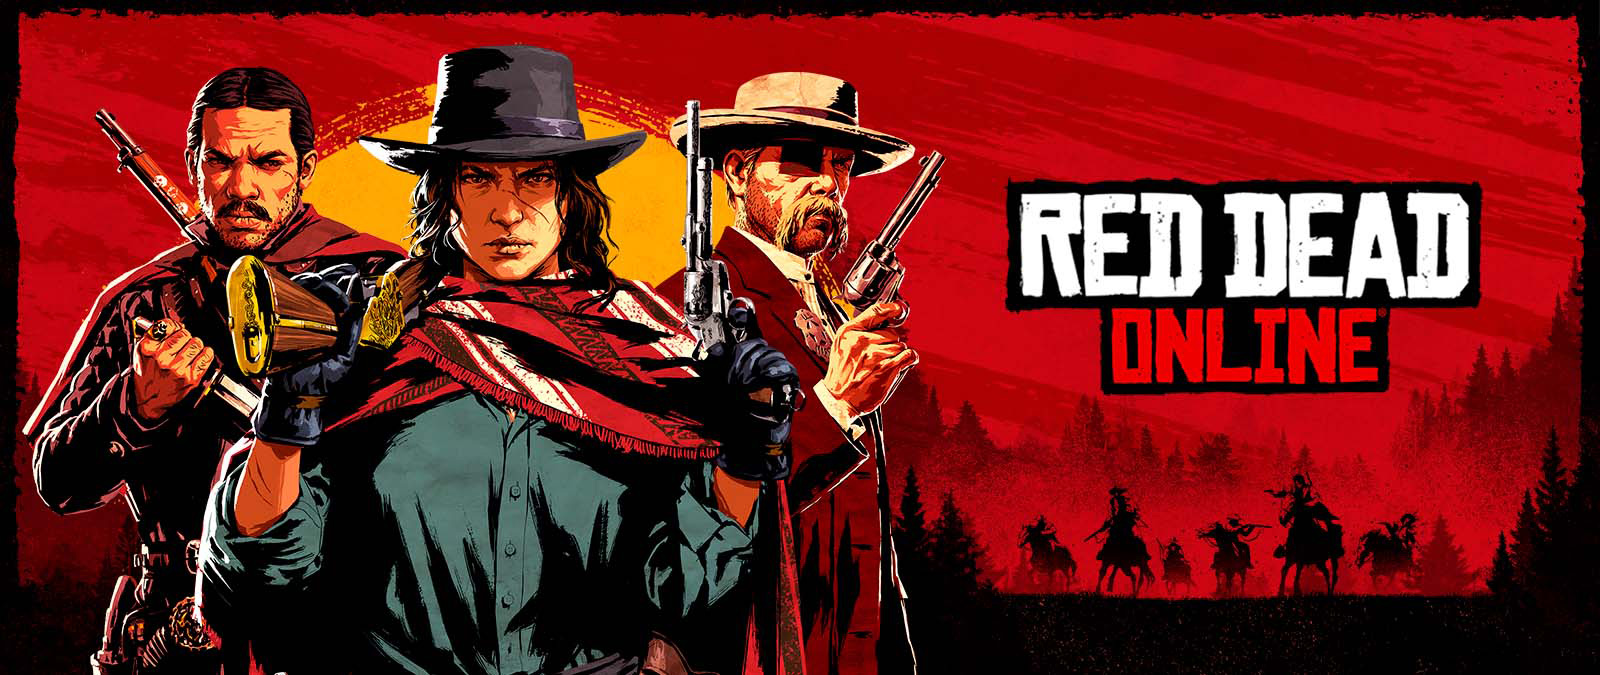 Red Dead Online. Drie personages met wapens voor een zonsondergang en schaduwen van andere personages op paarden.